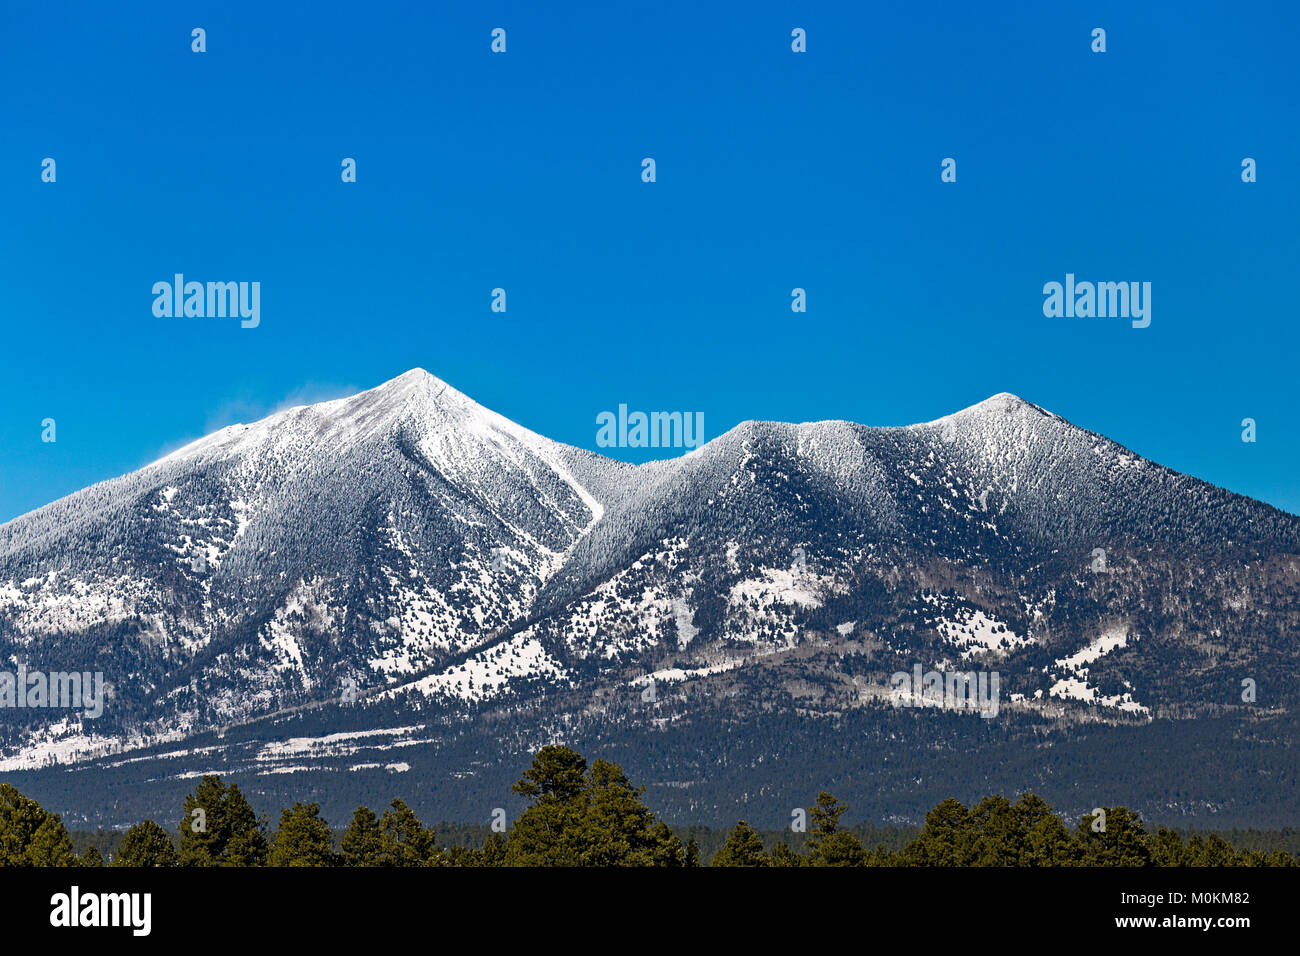 Le San Francisco culmine des montagnes avec un ciel bleu après une neige d'hiver à Flagstaff, Arizona Banque D'Images